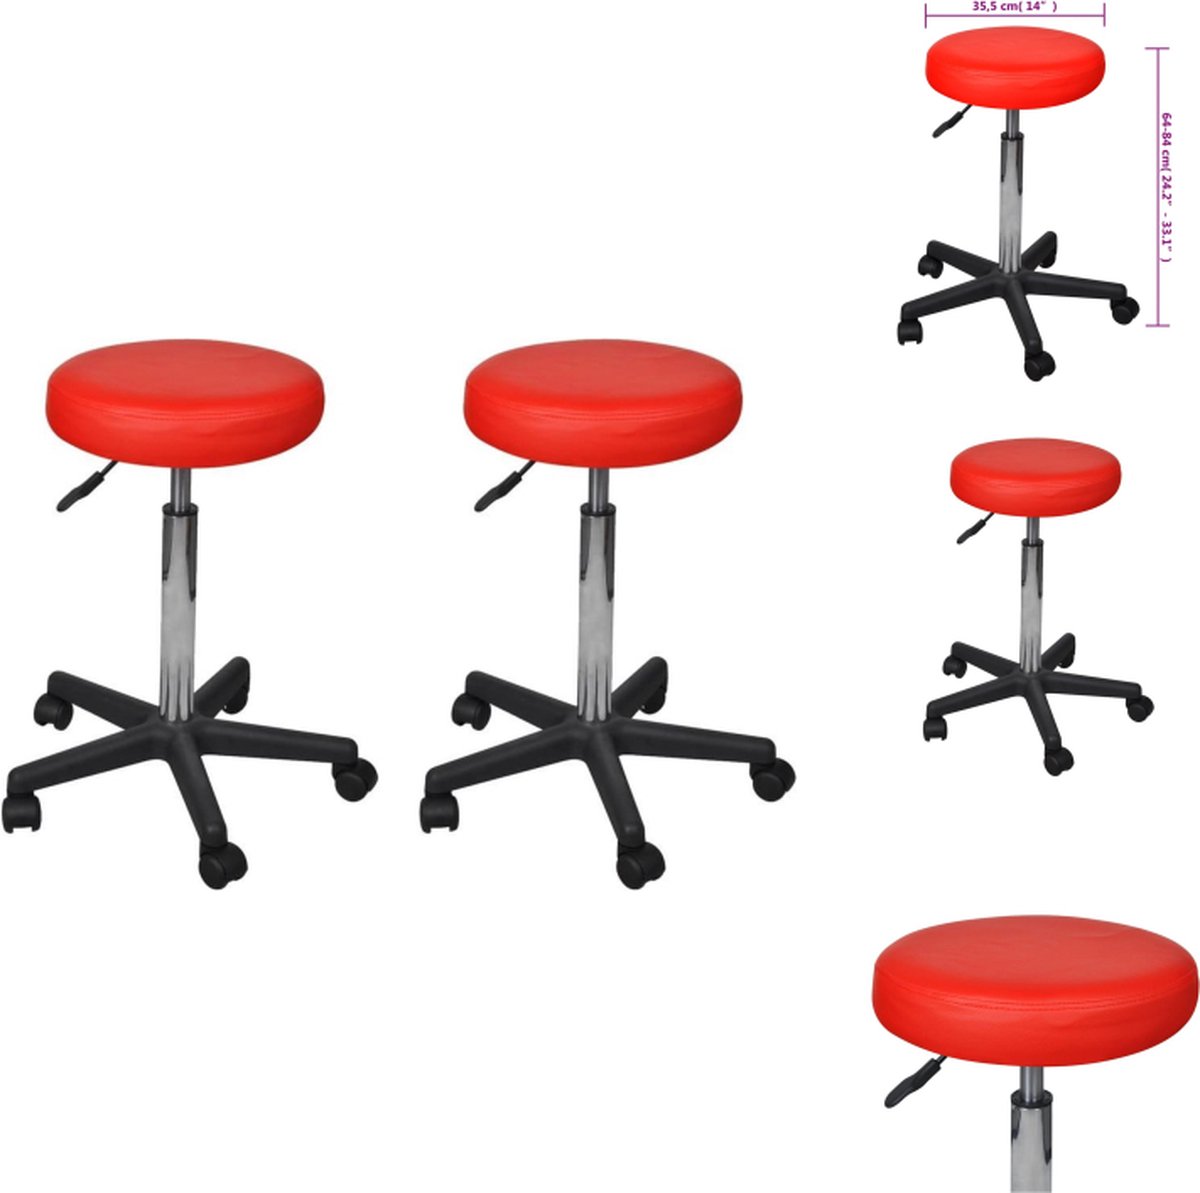 vidaXL Kantoorkruk Rood 35.5 x (64-84) cm - verstelbaar - 2 krukken - Bureaustoel